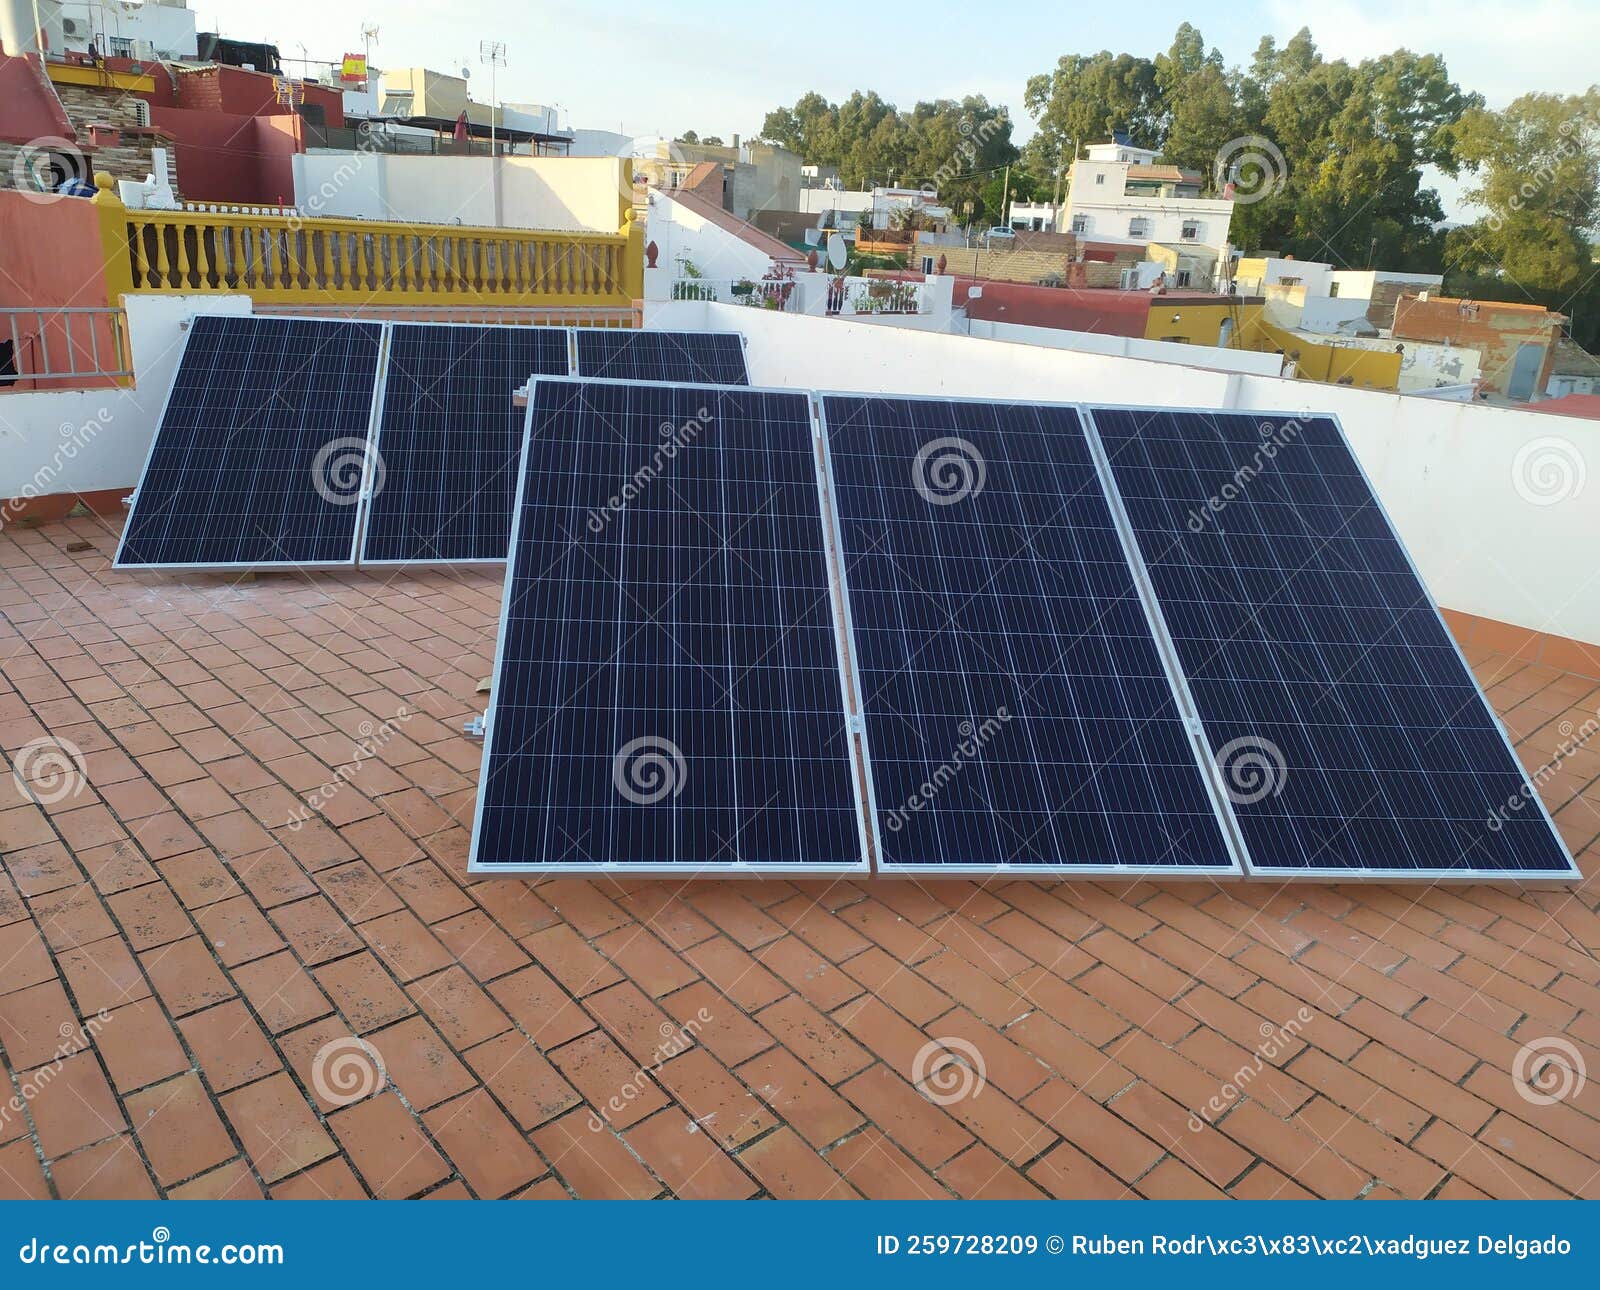 installation of 6 solar panels